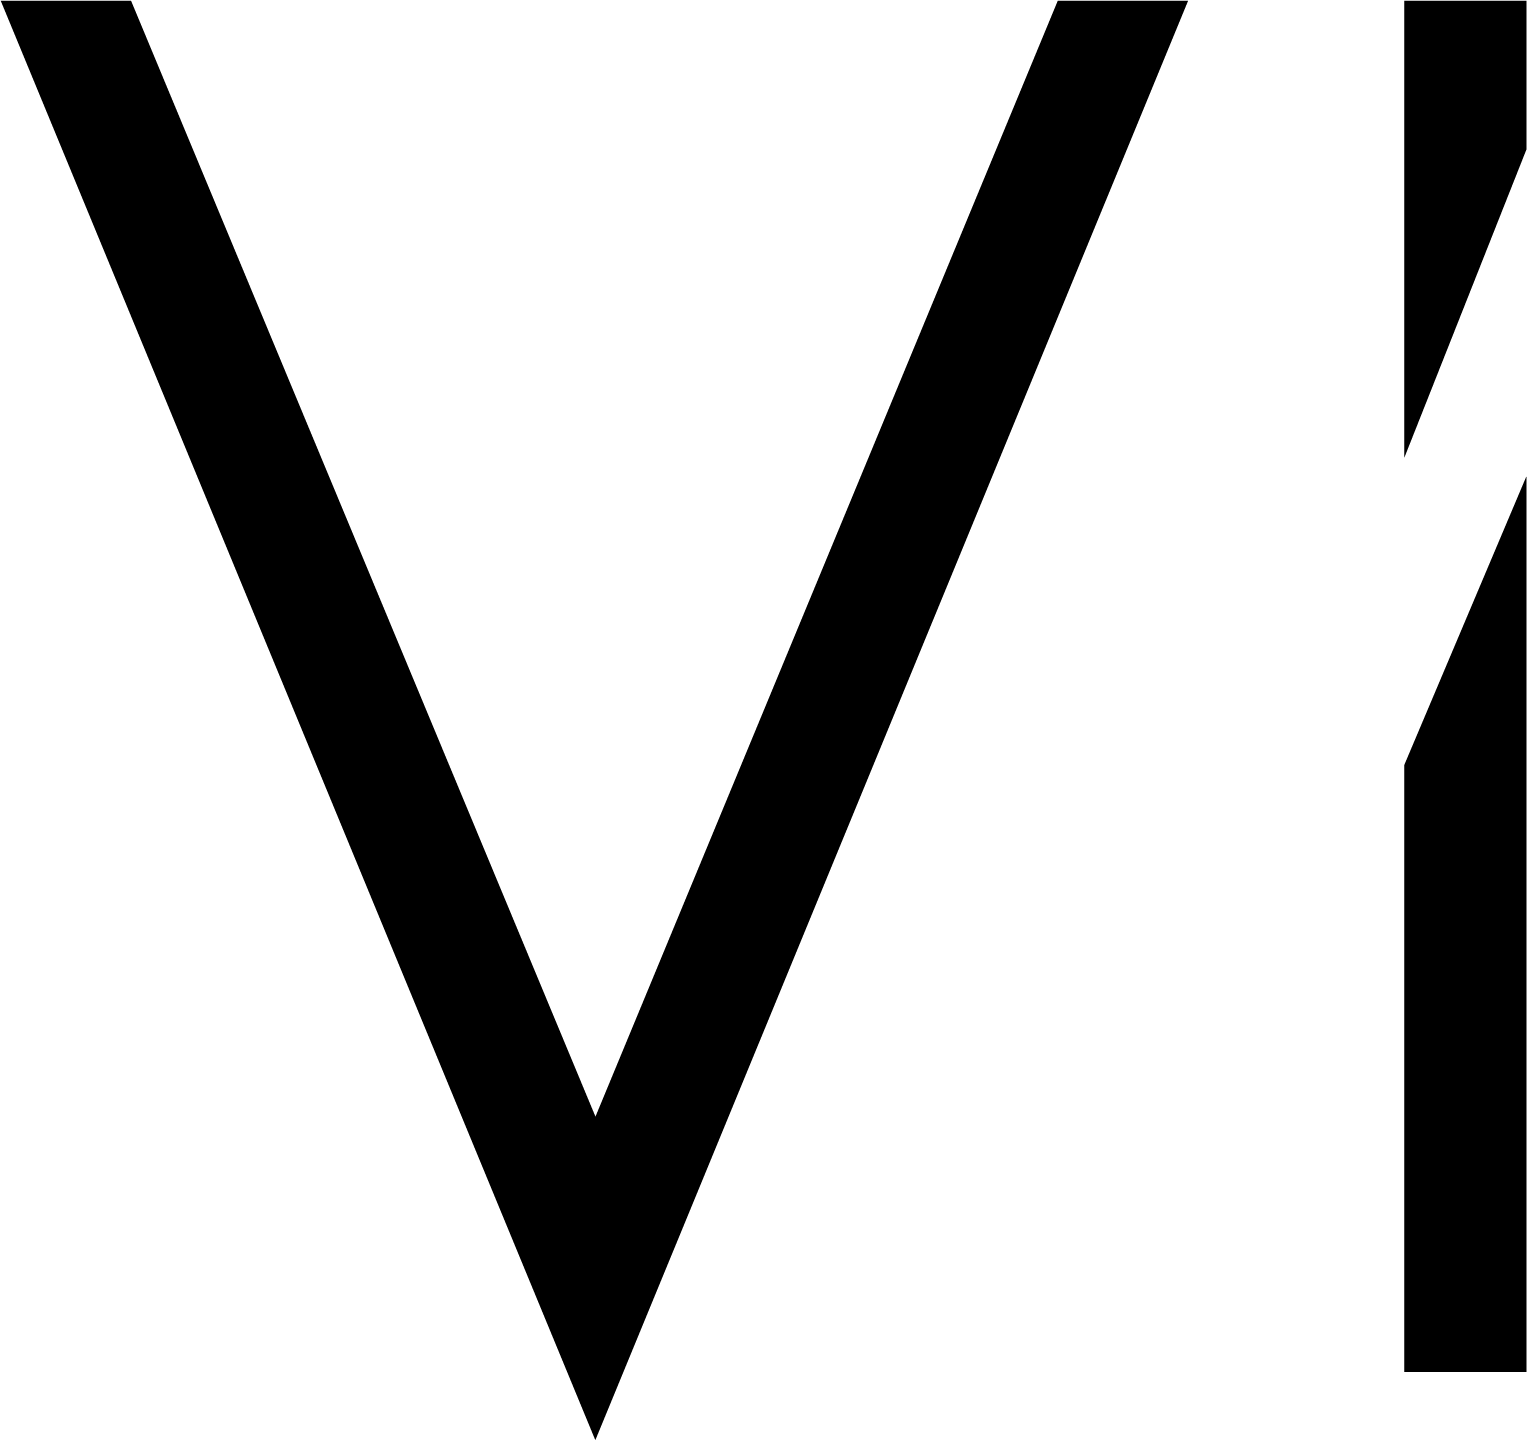 Vi Logo - Vi Trainer